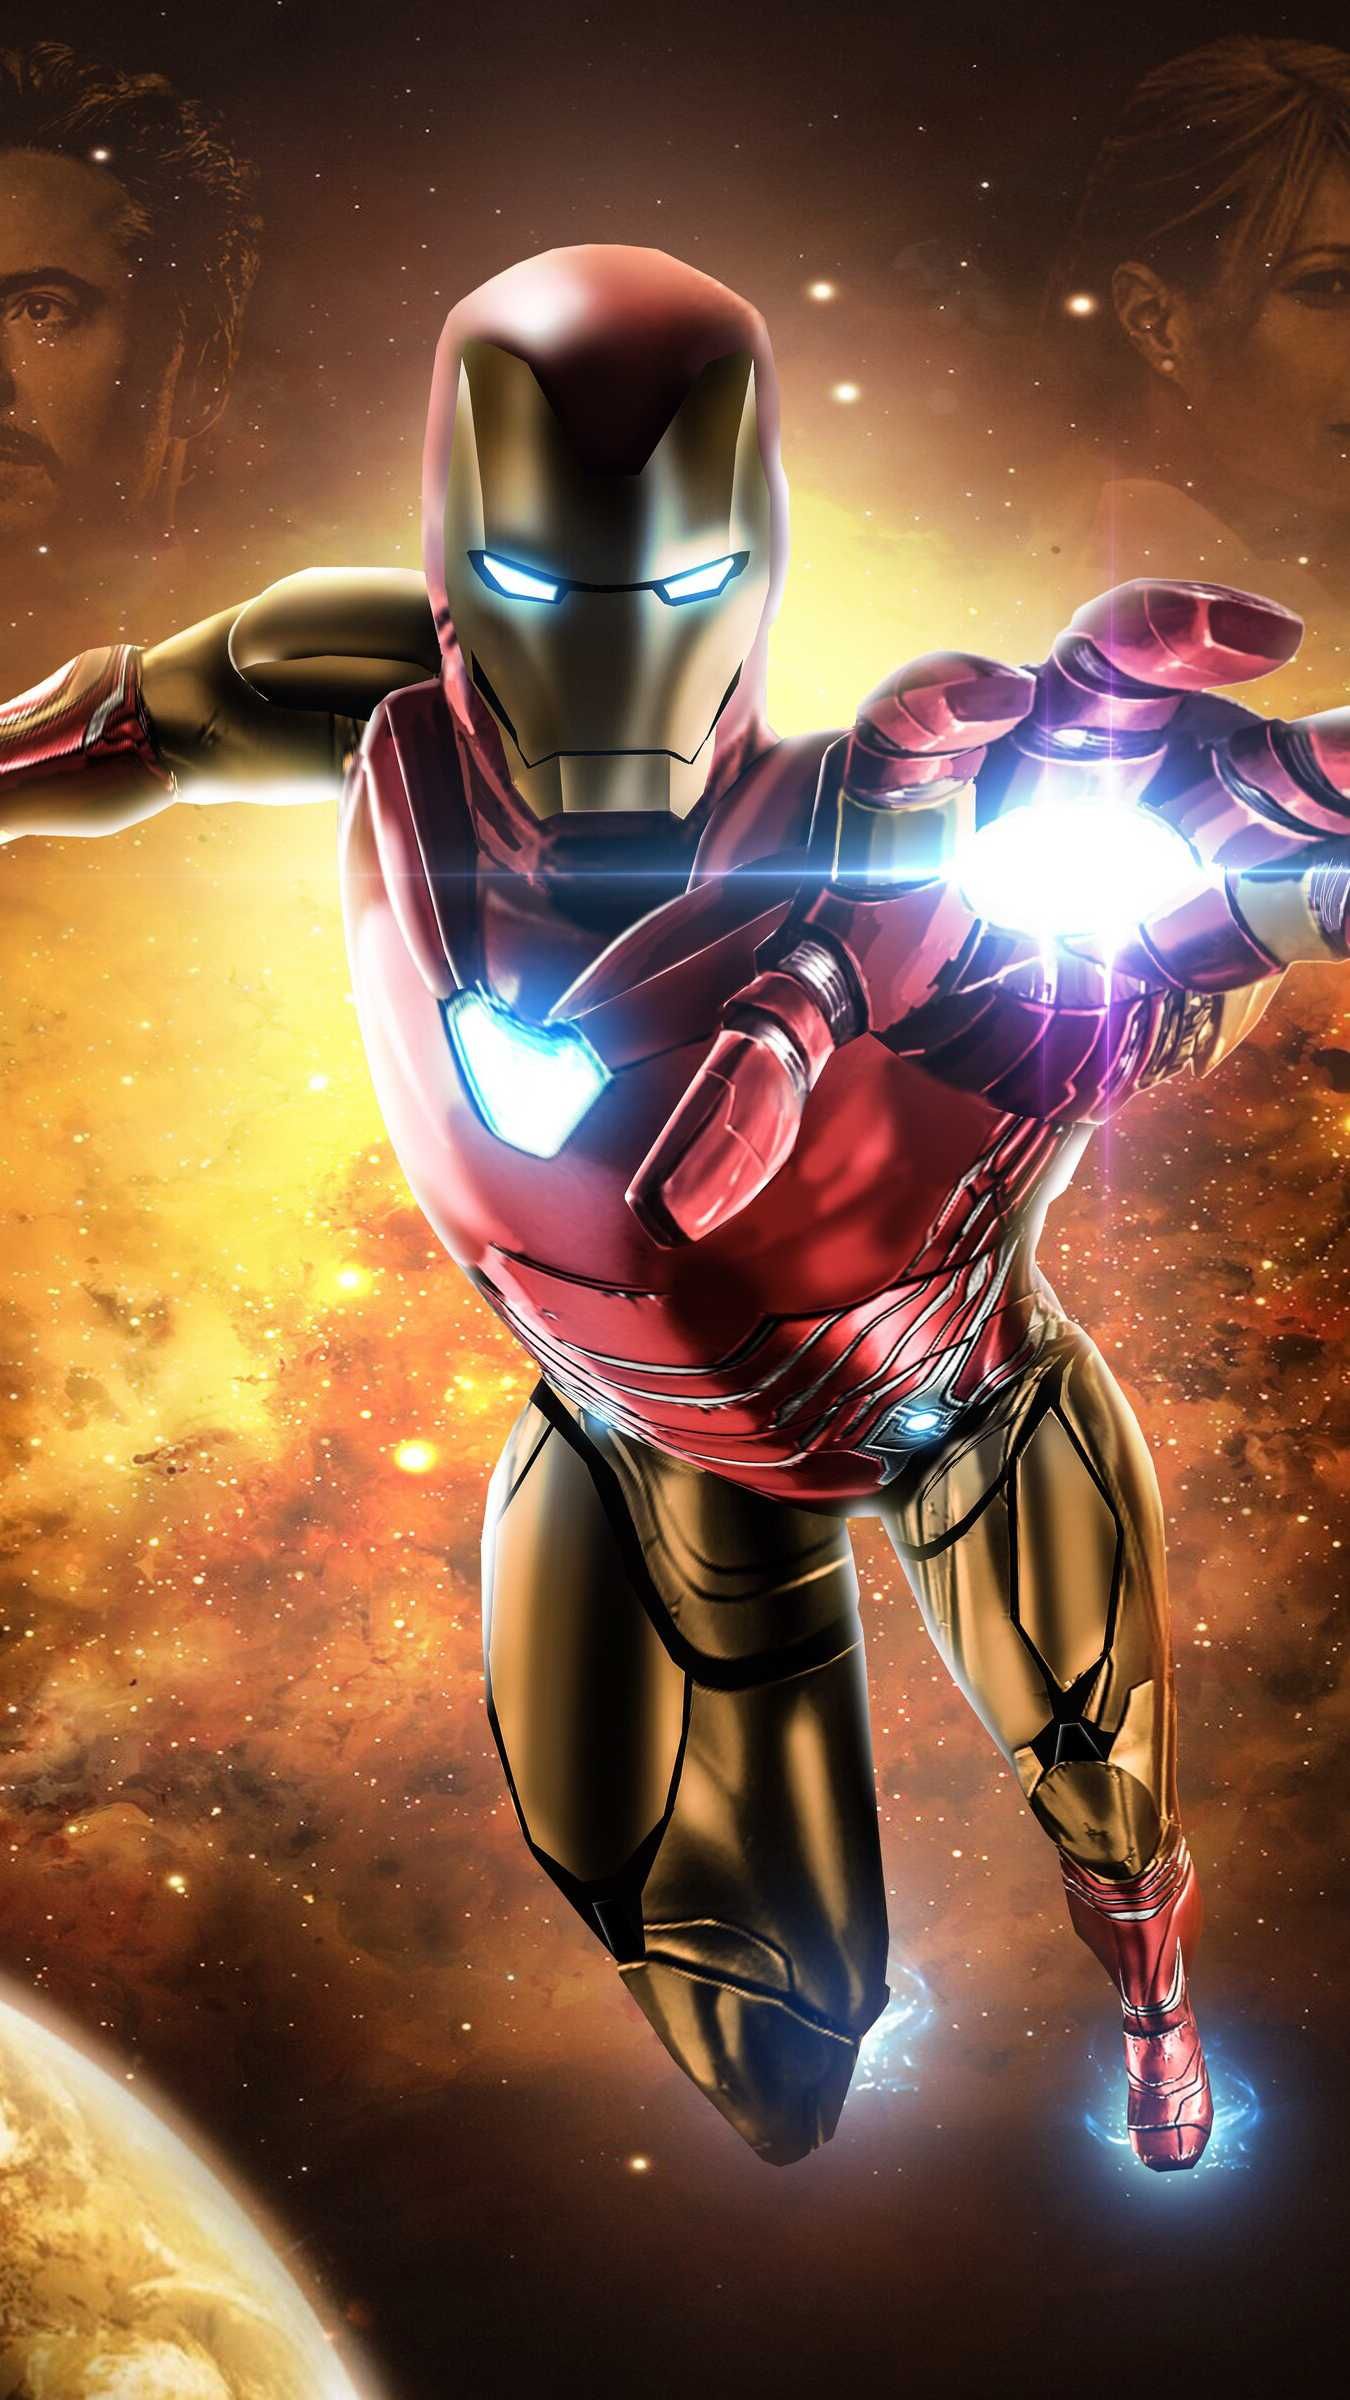 Avengers Endgame Iron Man Mark 85 Armor .br.com